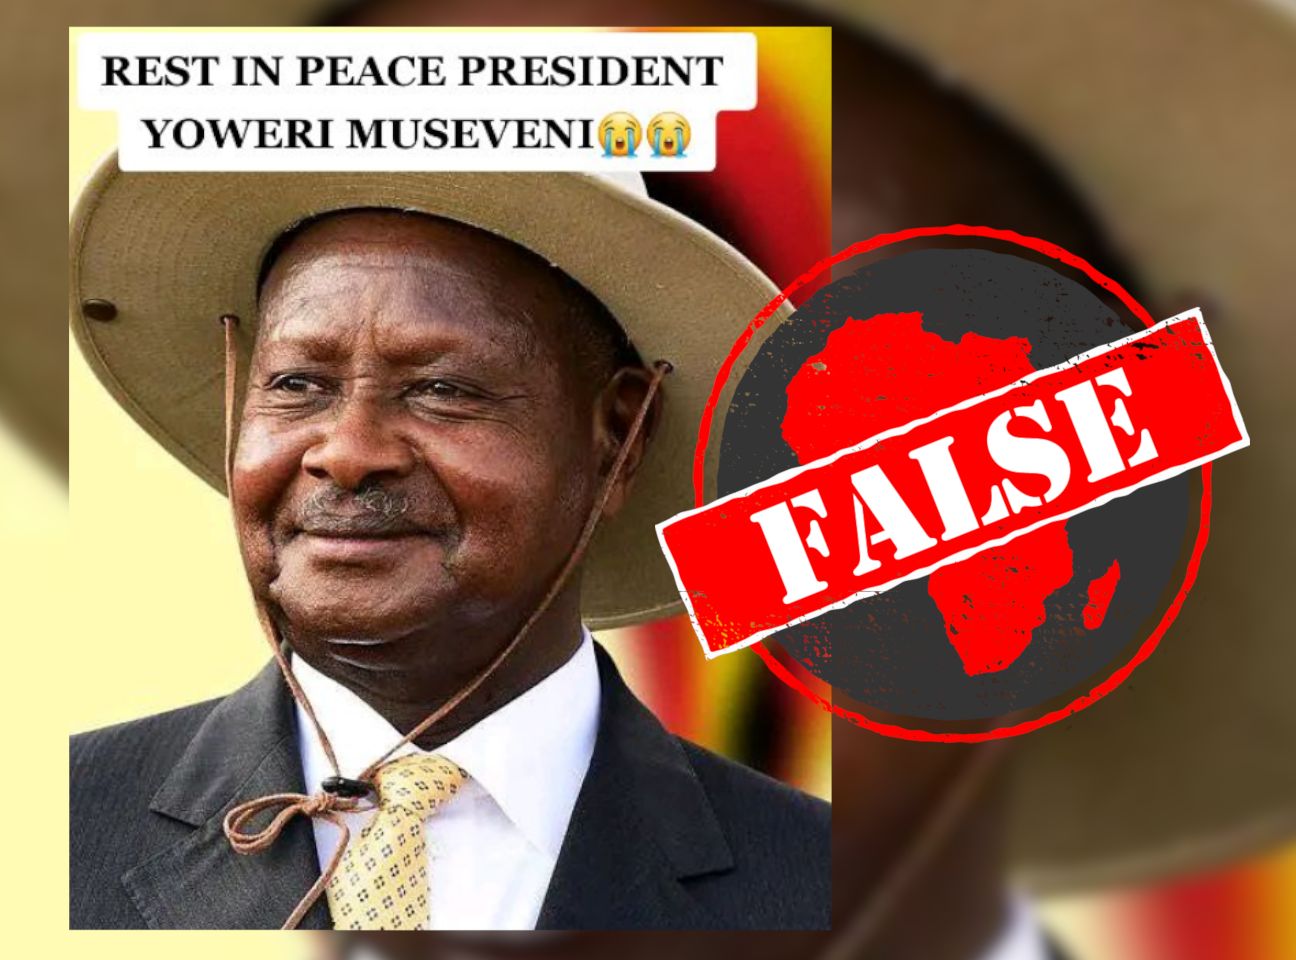 MuseveniDead_False